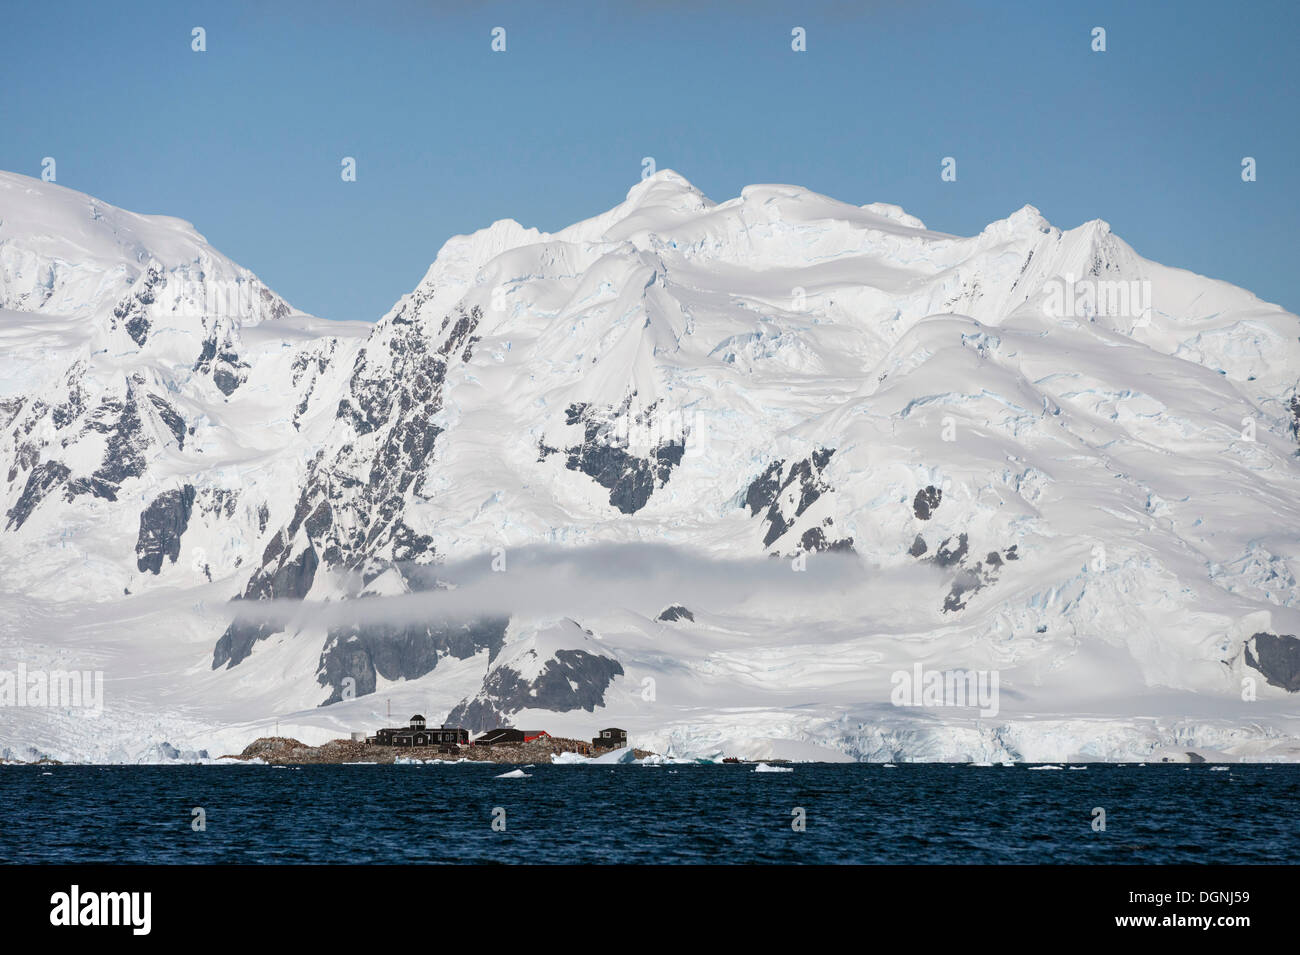 González Videla Antarctic Base, einem chilenischen research Station, Waterboat Punkt, Paradise Bay, antarktische Halbinsel, Antarktis Stockfoto